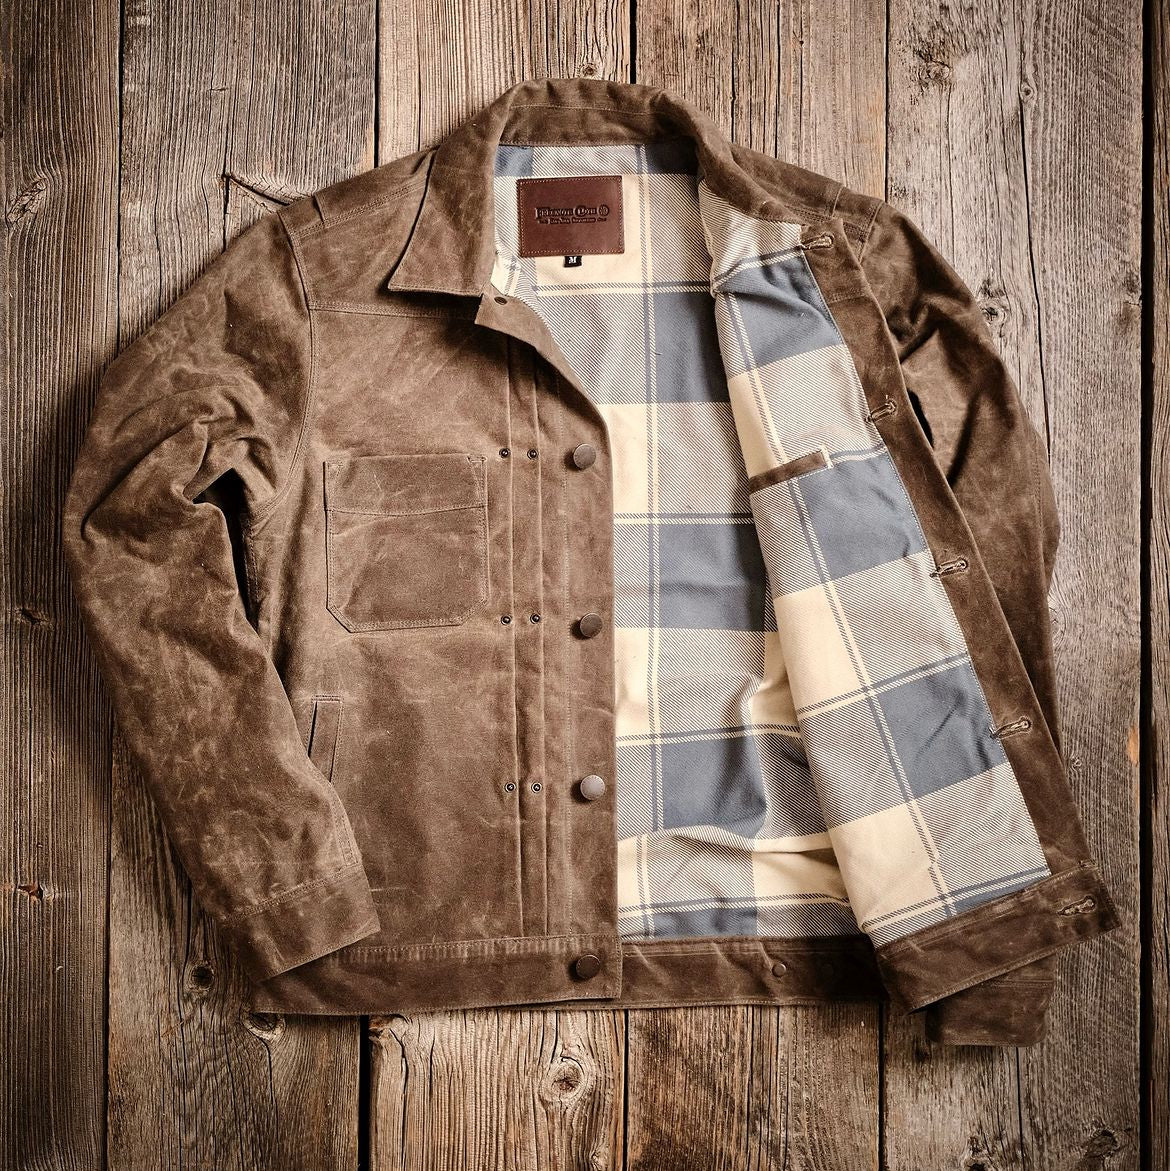 Freenote Cloth Benson Southwestern Brushed Jacquard Shirt - Olive Southwest, Long Sleeve Shirts